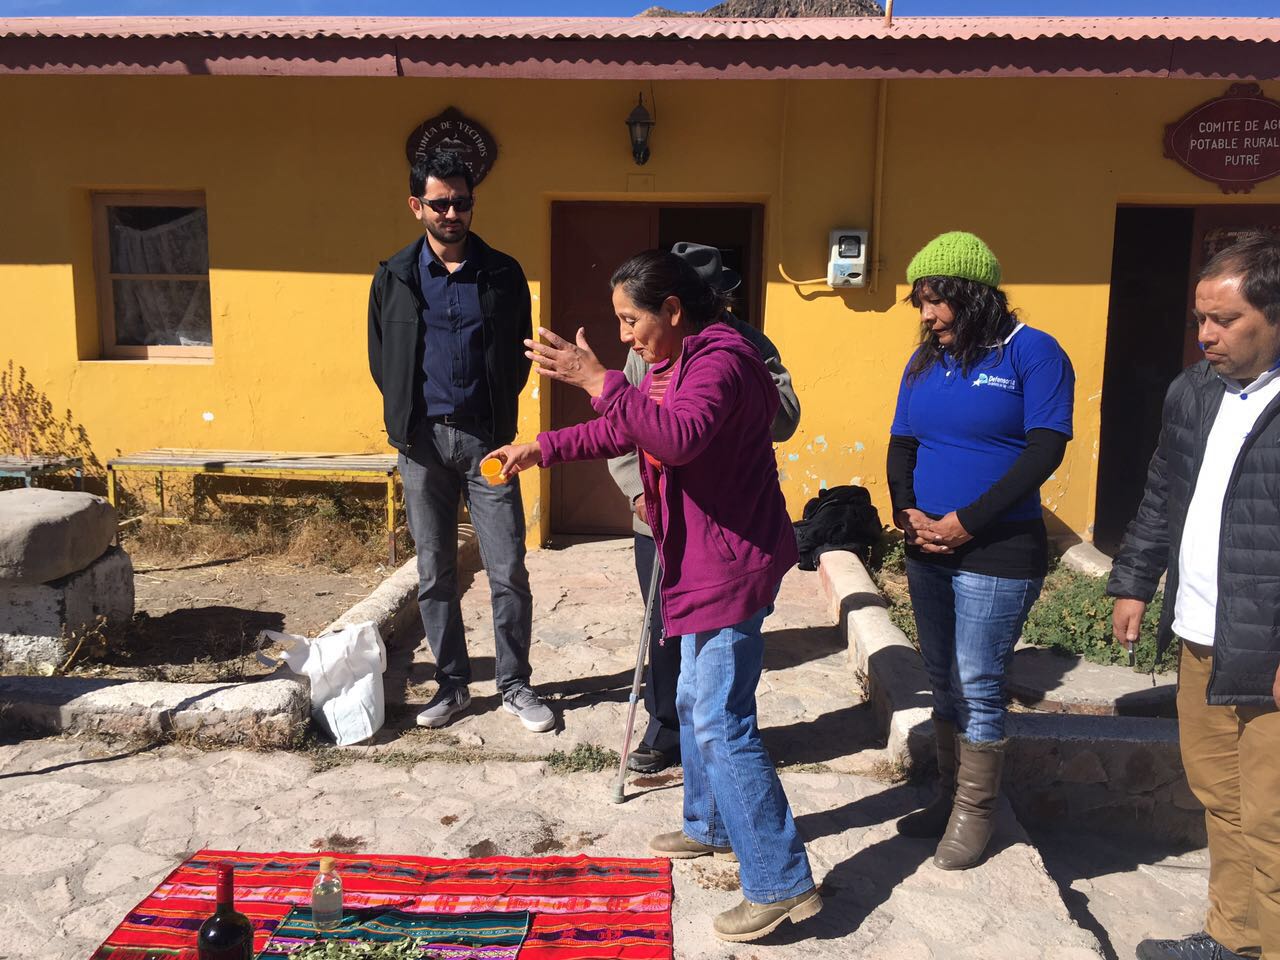 Delia Condori, consejera nacional Aymara de Putre, realizó una pawa  junto al equipo de defensa pena aymara e indígena.